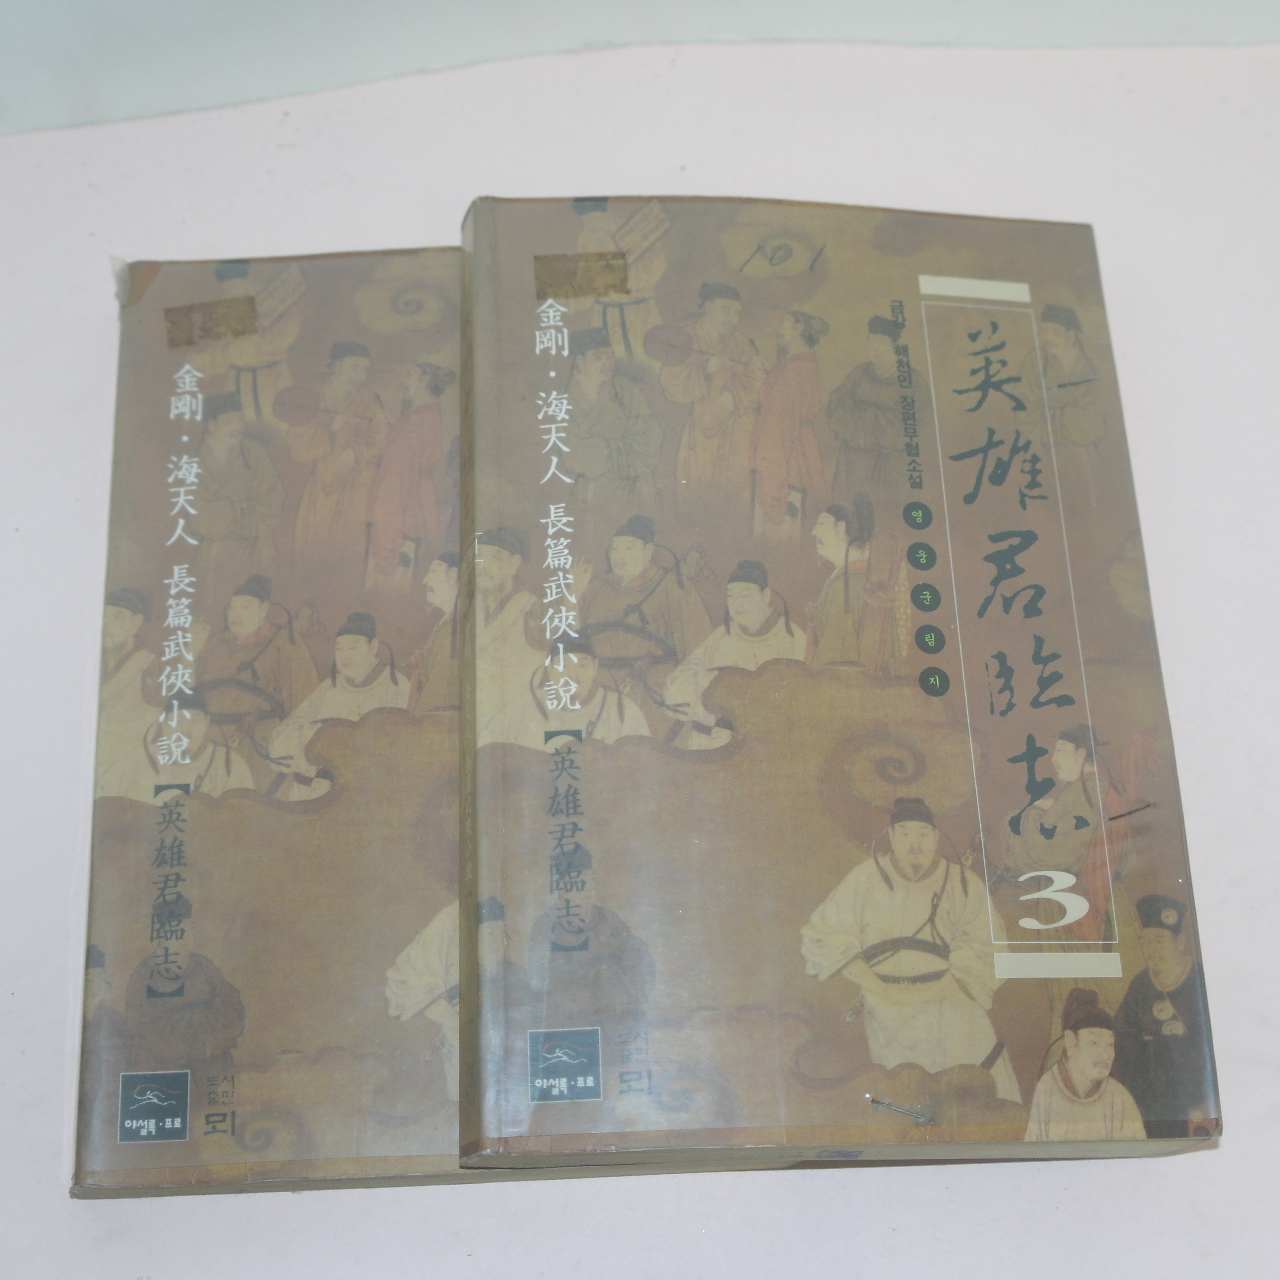 1998년초판 금강,해천인 무협소설 영웅군림지(英雄君臨志)권2,3  2책